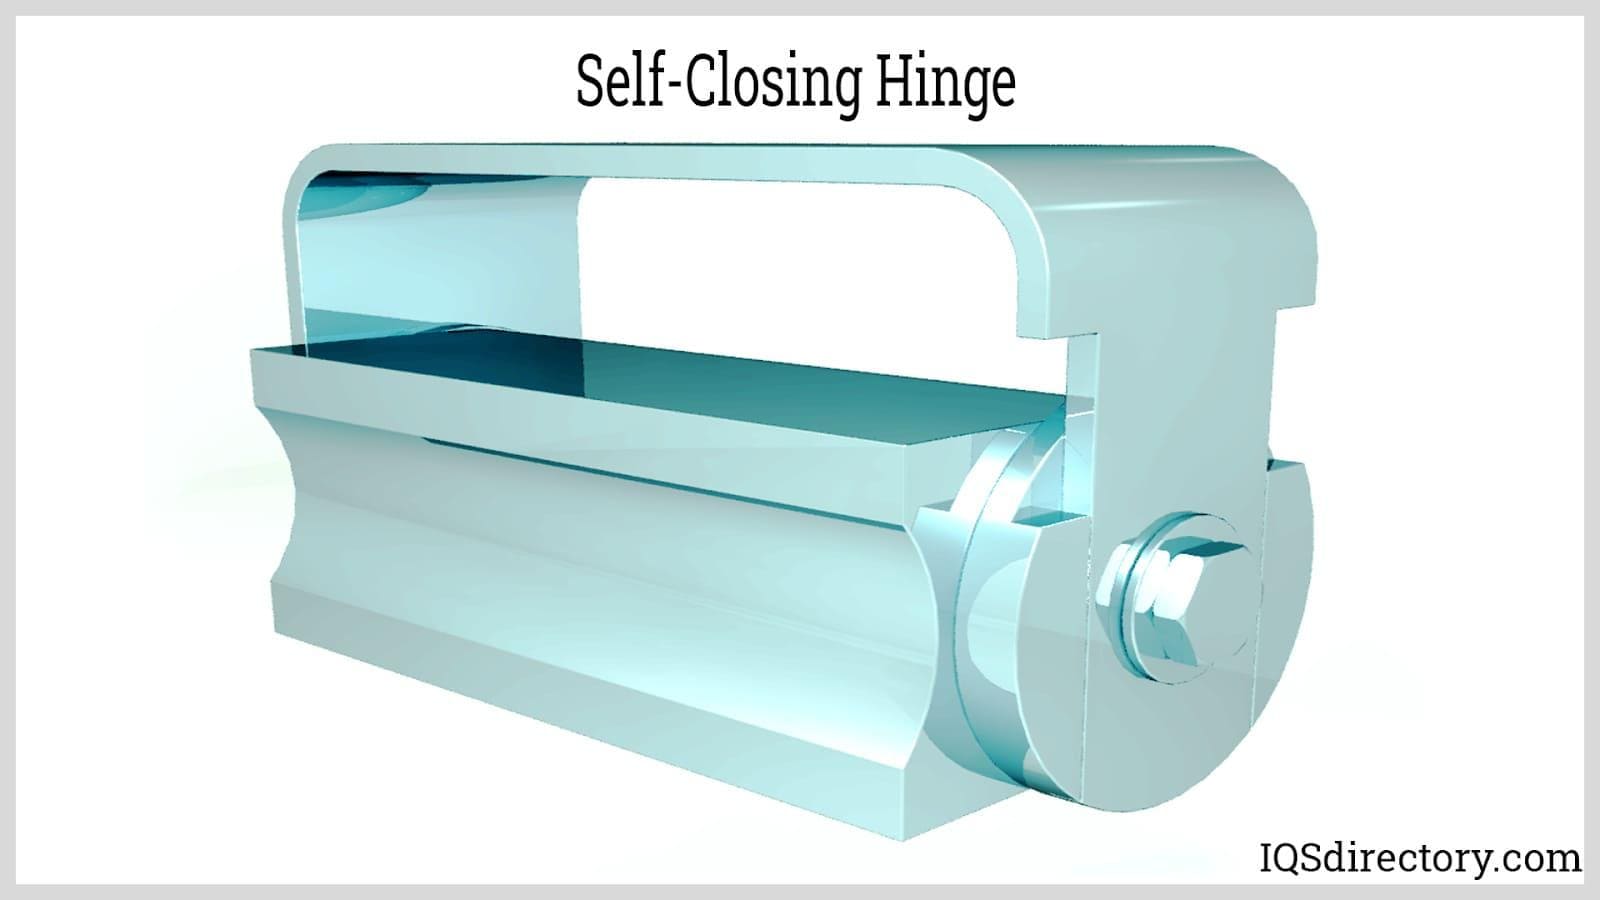 Self-Closing Hinge